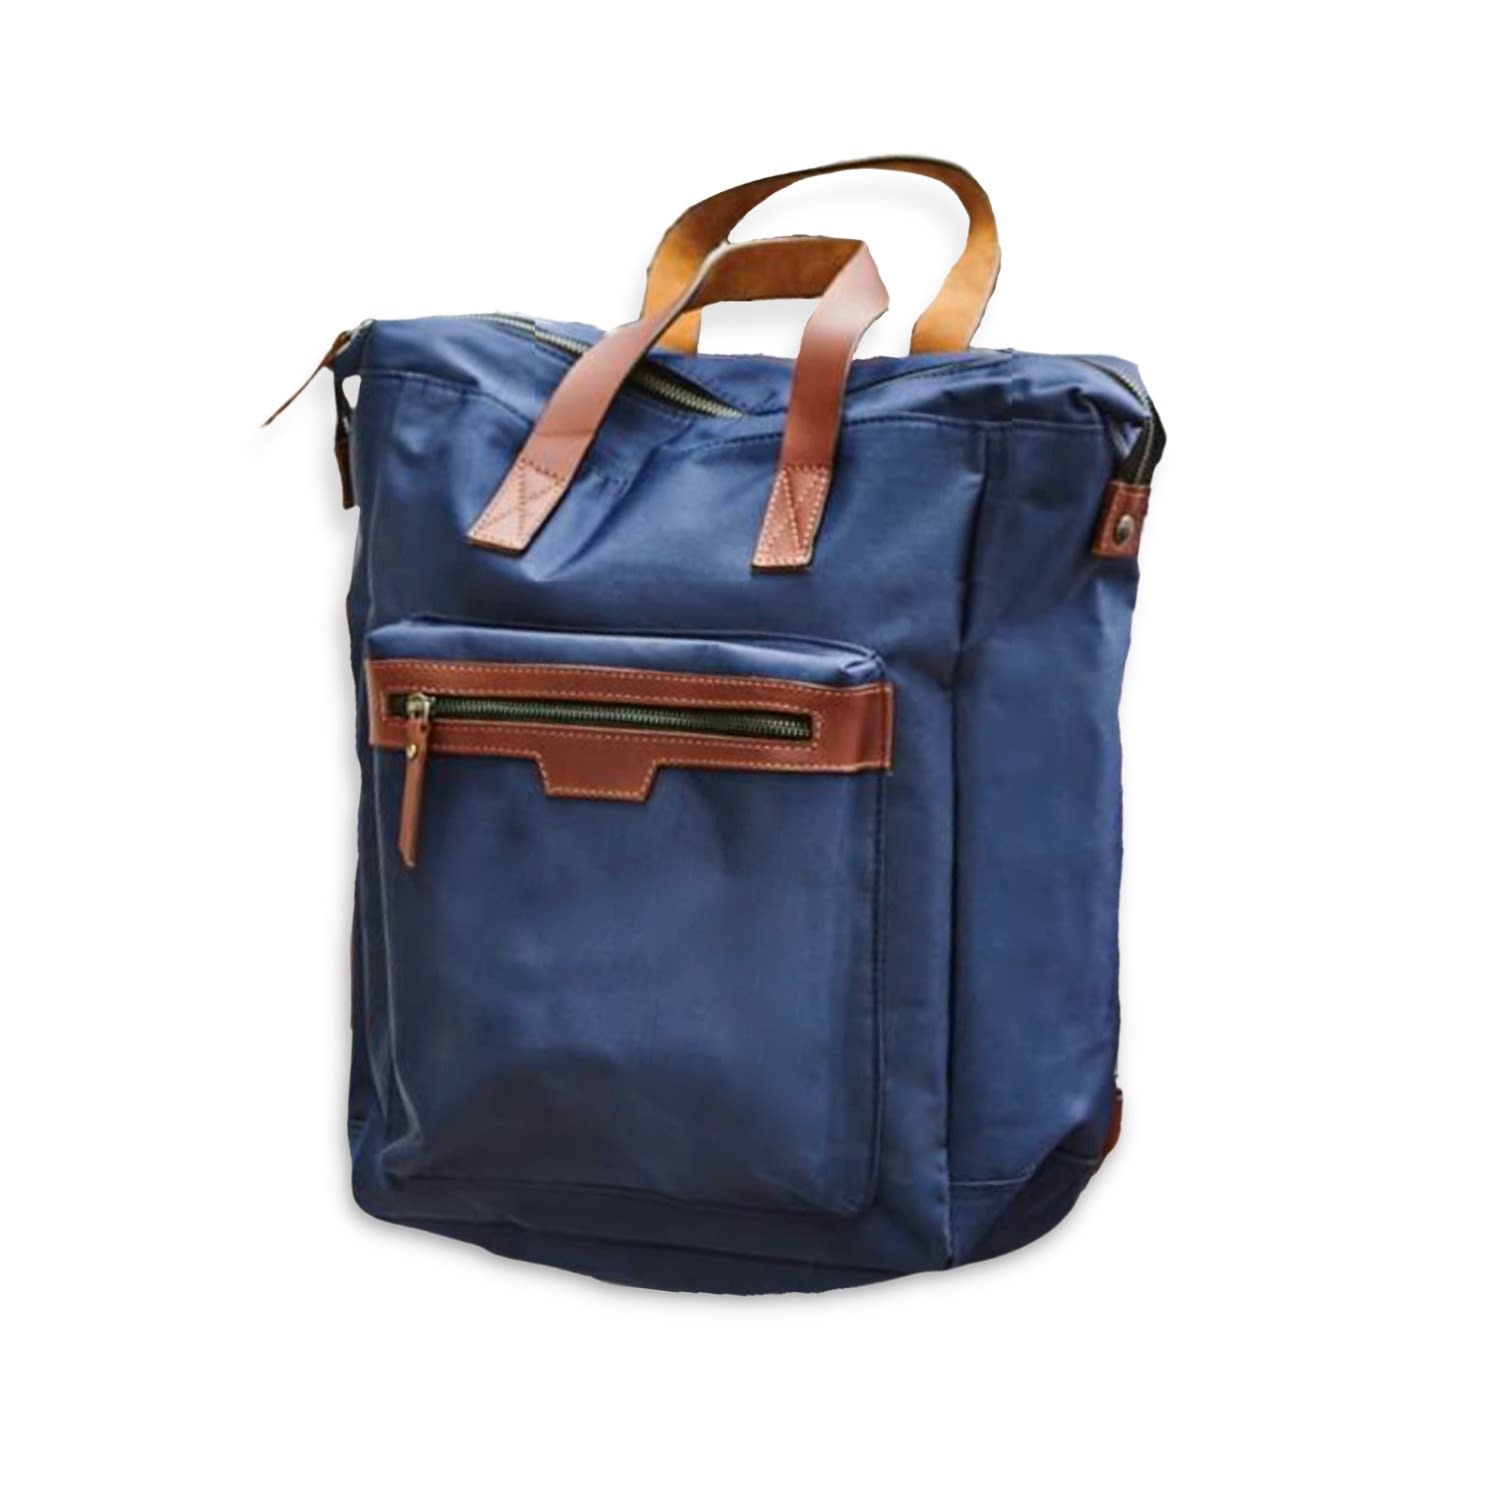 Vida Vida Women's Leather Trim Top Zip Backpack - Blue